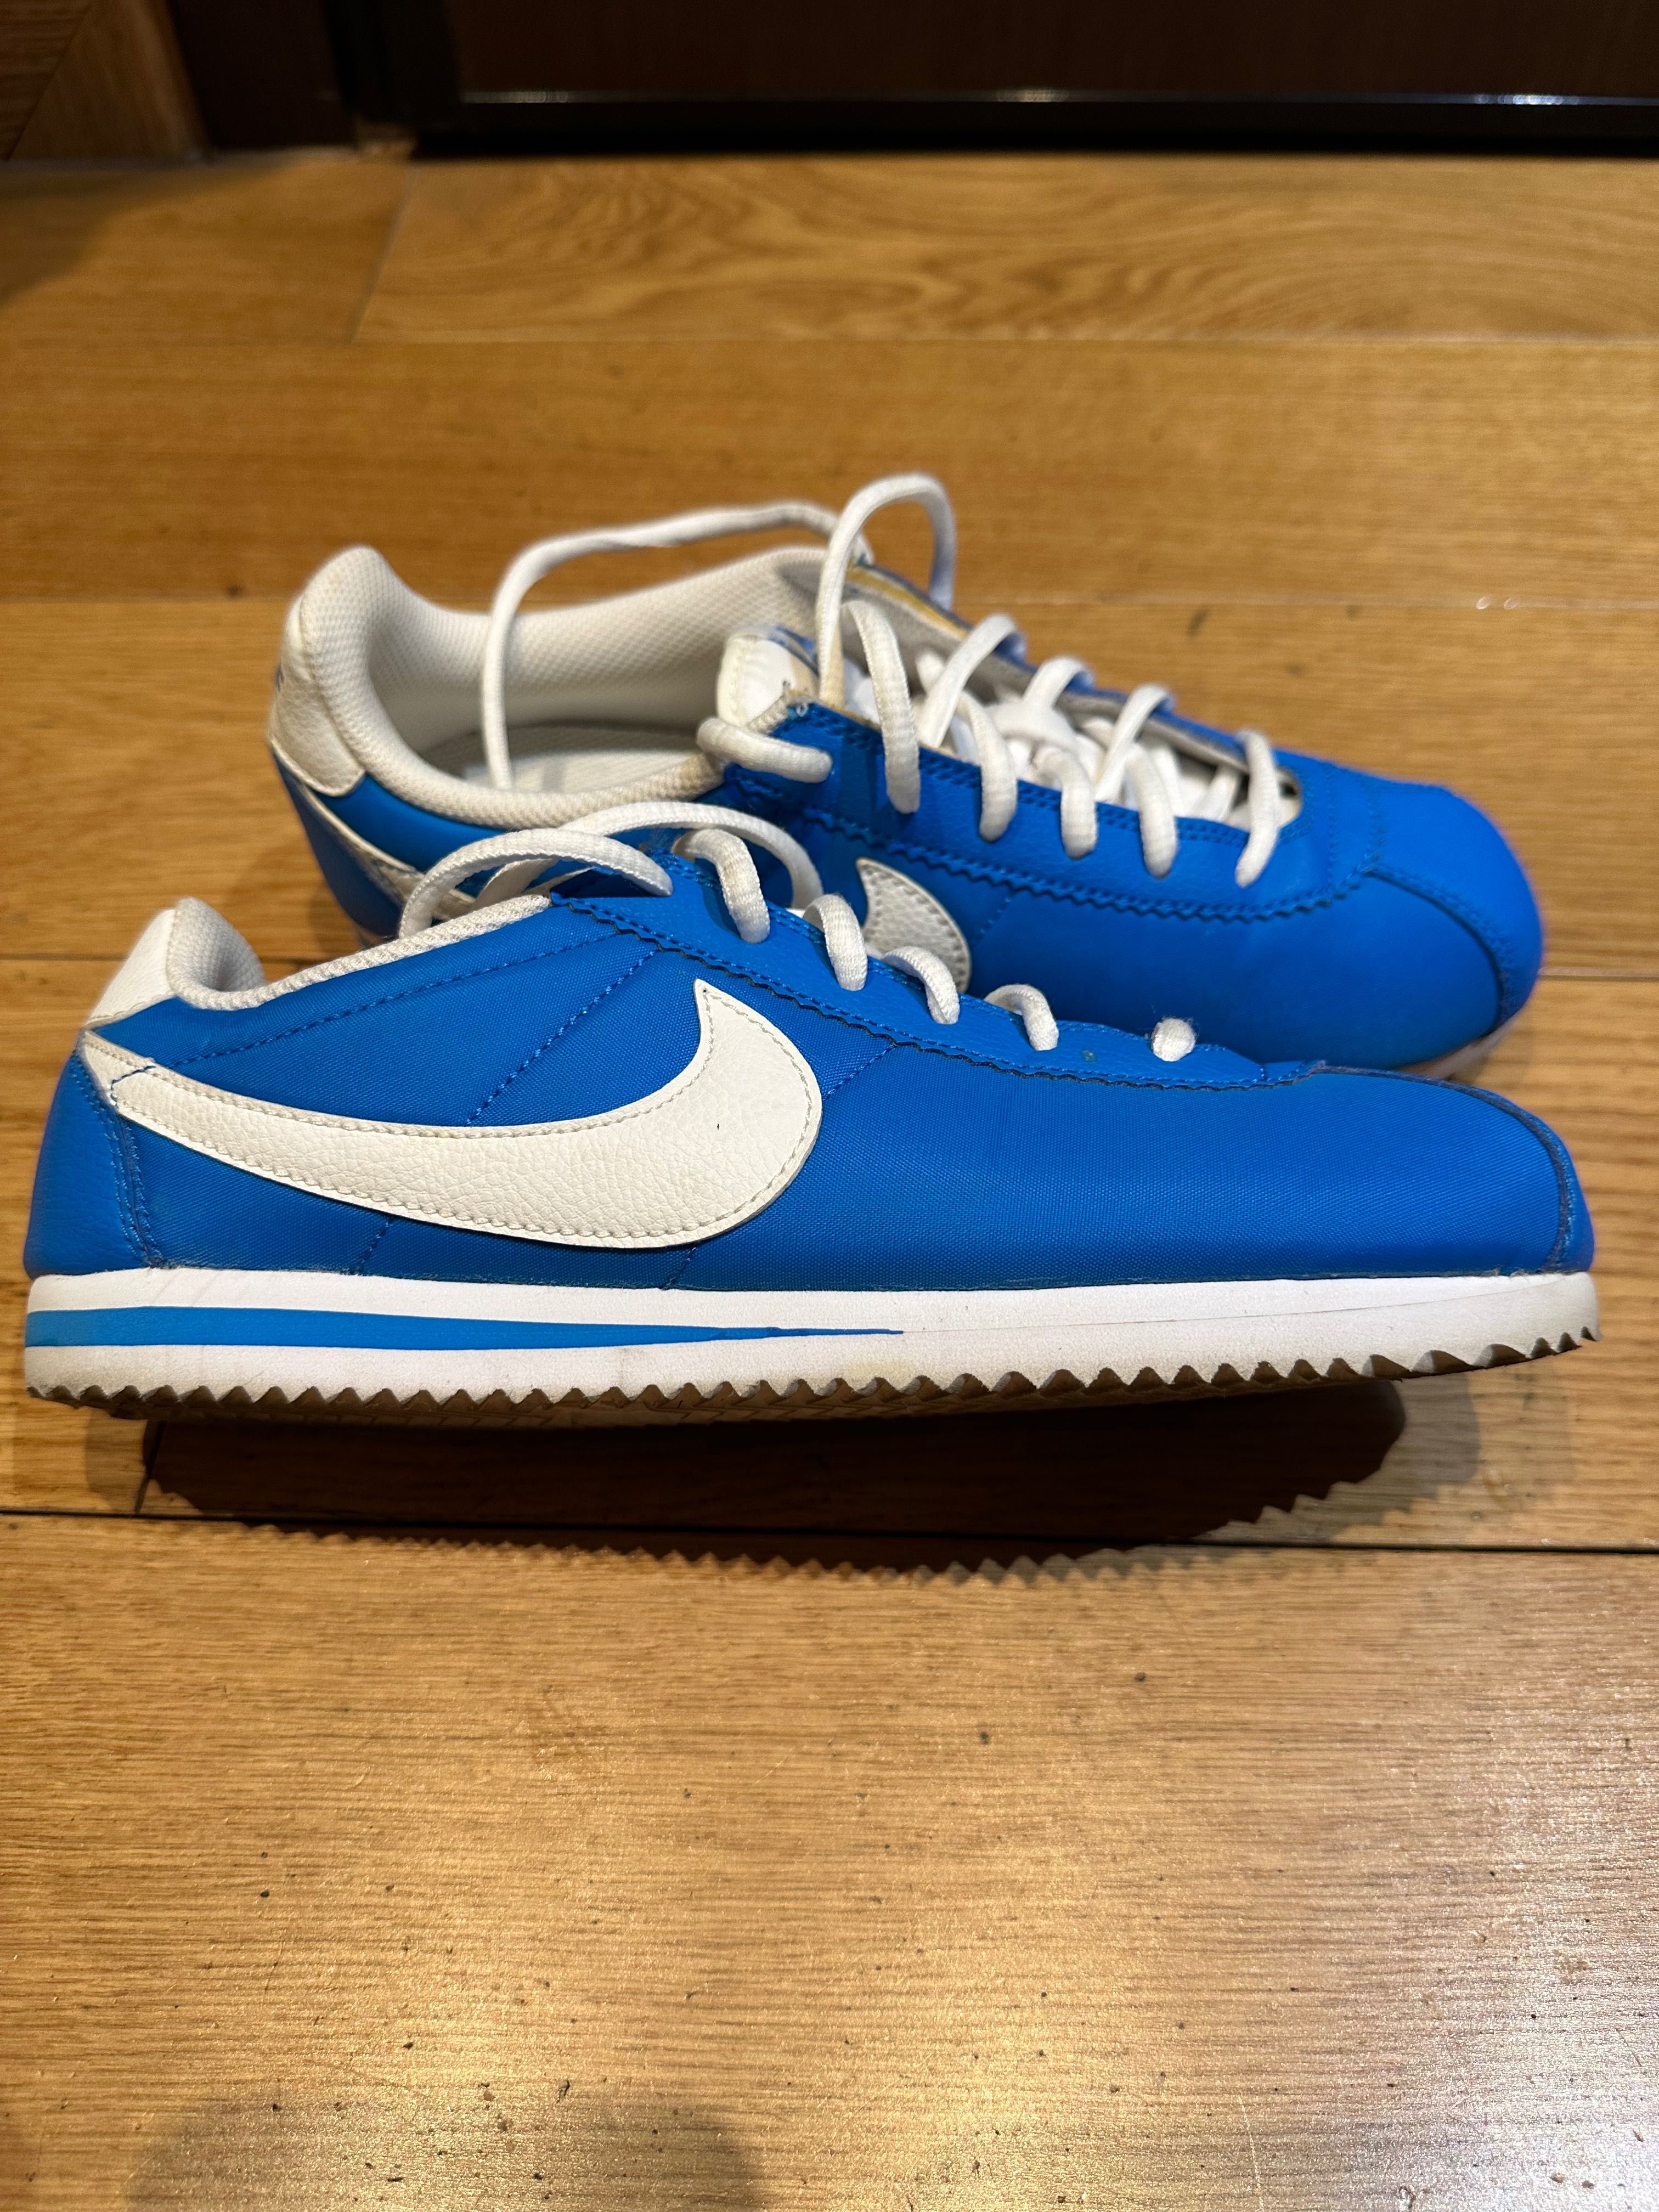 Nike Cortez albastri, marime 39 (recomand pt 38/38.5)